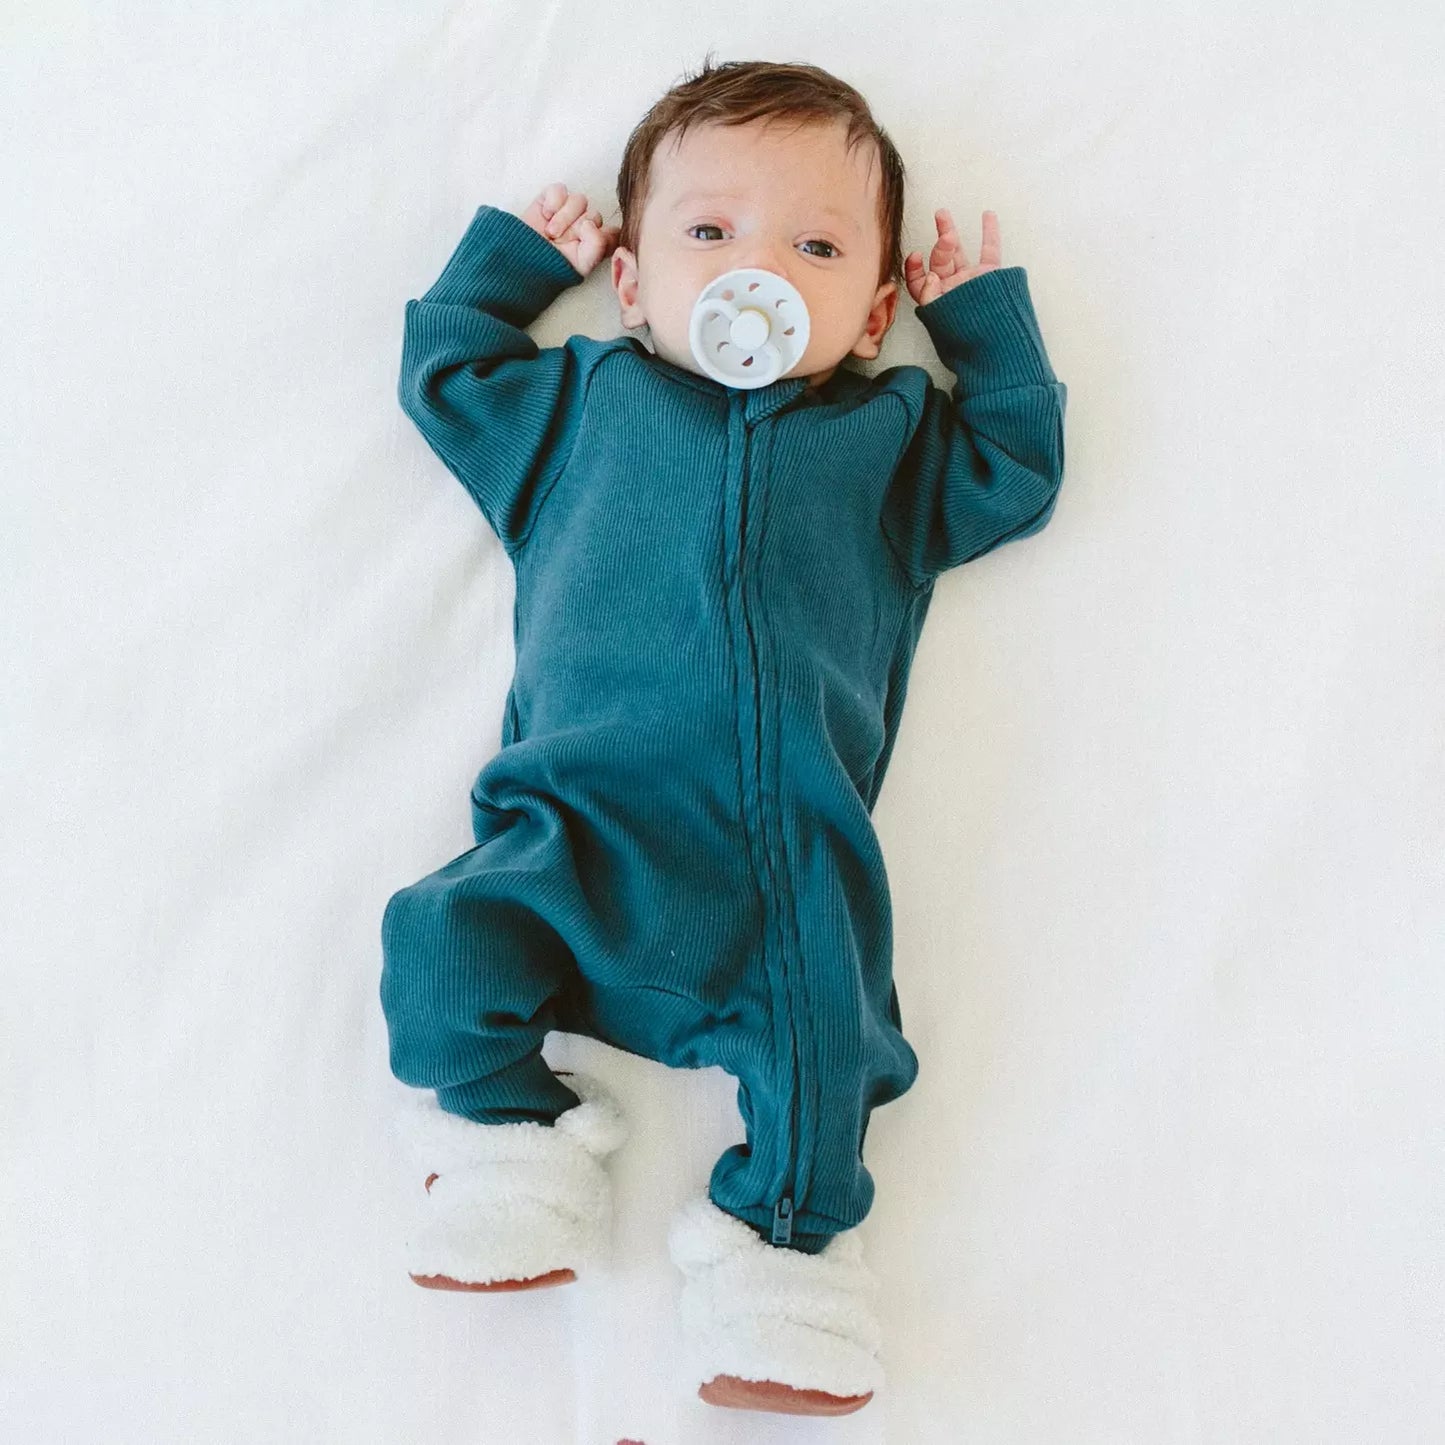 Baby wearing goumikids Long Sleeve Zipper One-Piece - Hudson